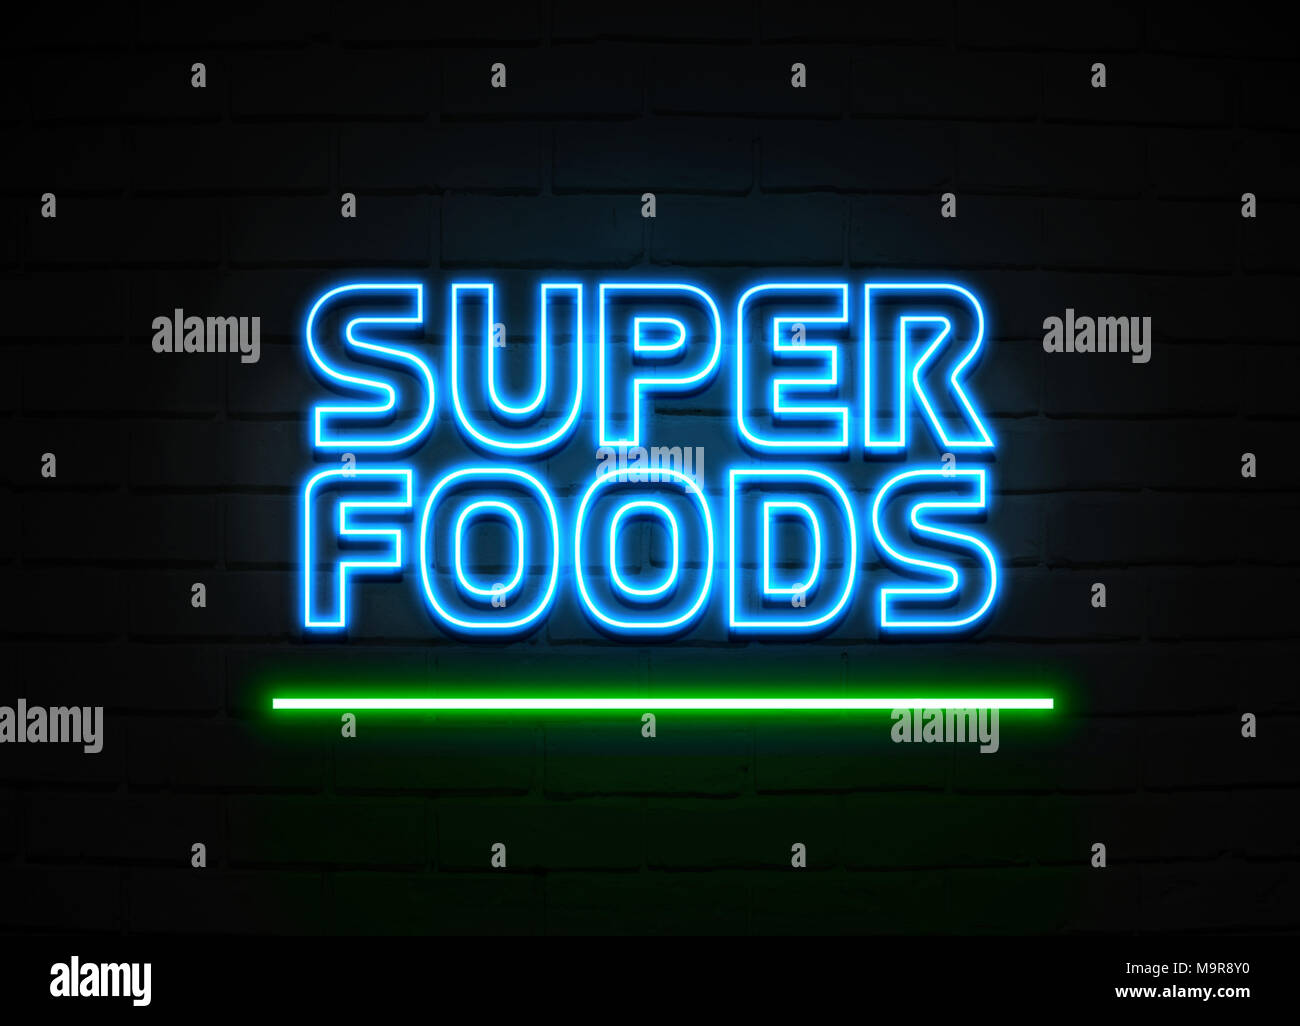 Super Foods Leuchtreklame - glühende Leuchtreklame auf brickwall Wand - 3D-Royalty Free Stock Illustration dargestellt. Stockfoto